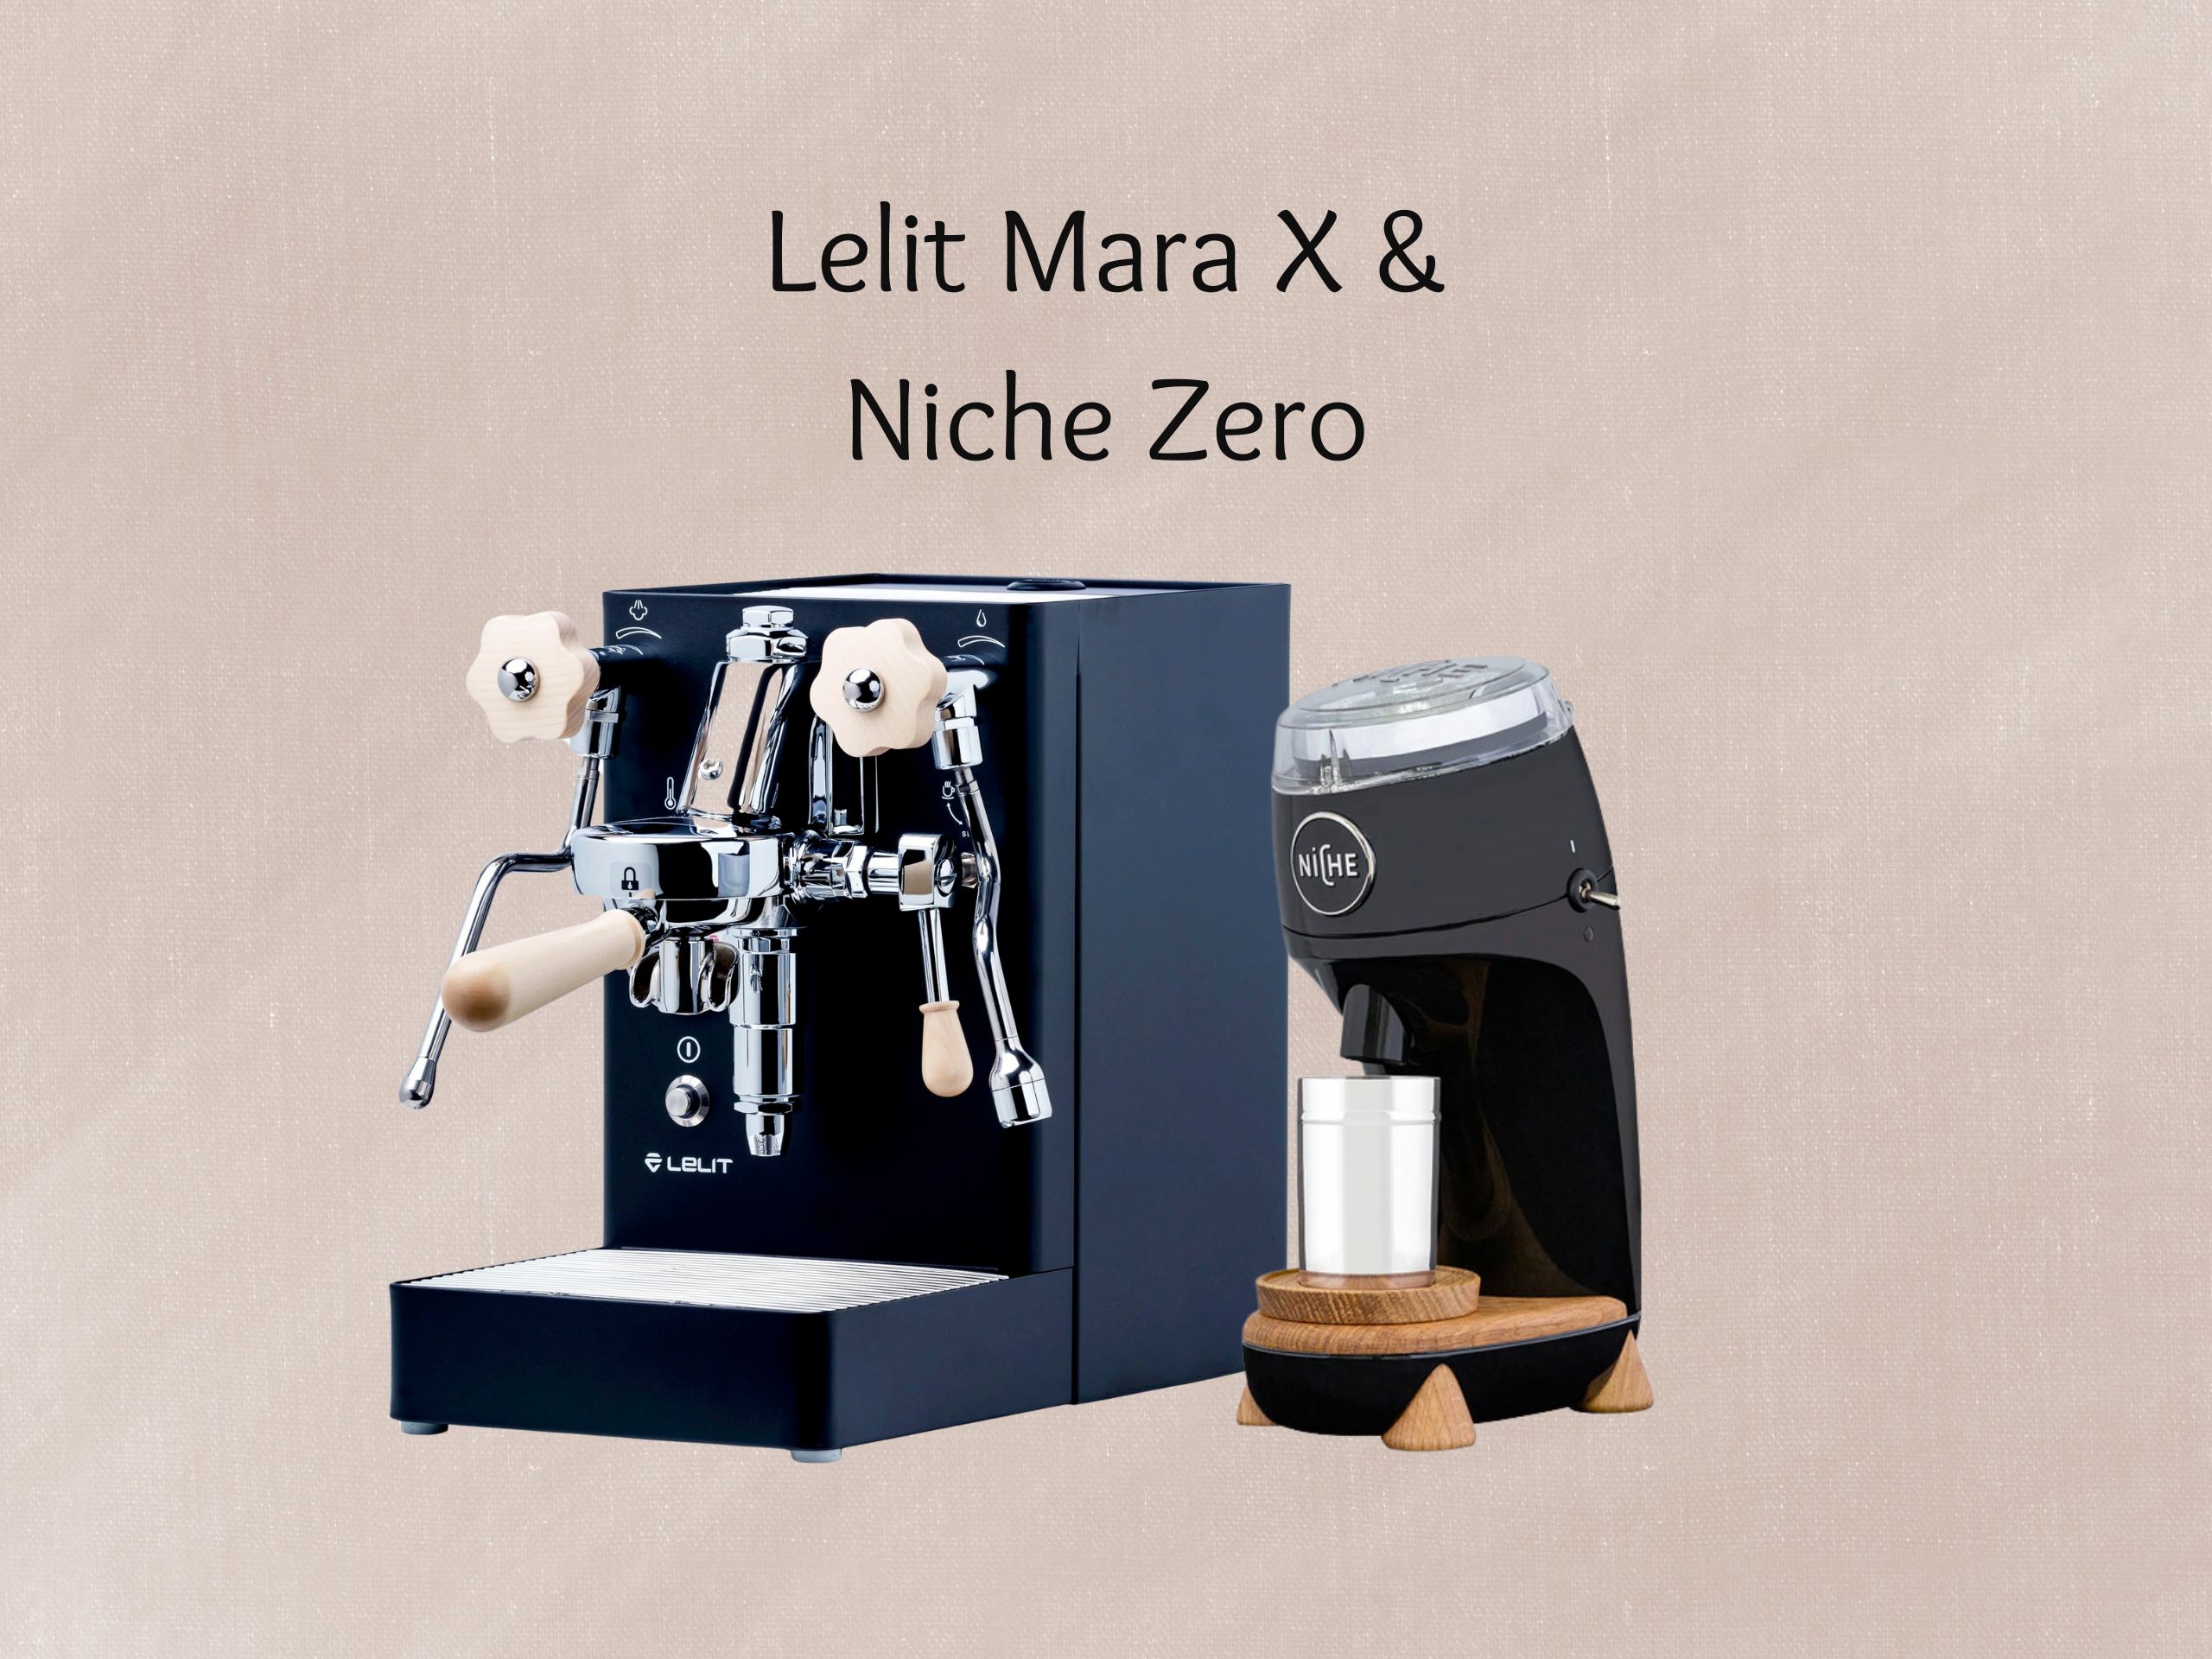 Lelit Mara X & Niche Zero